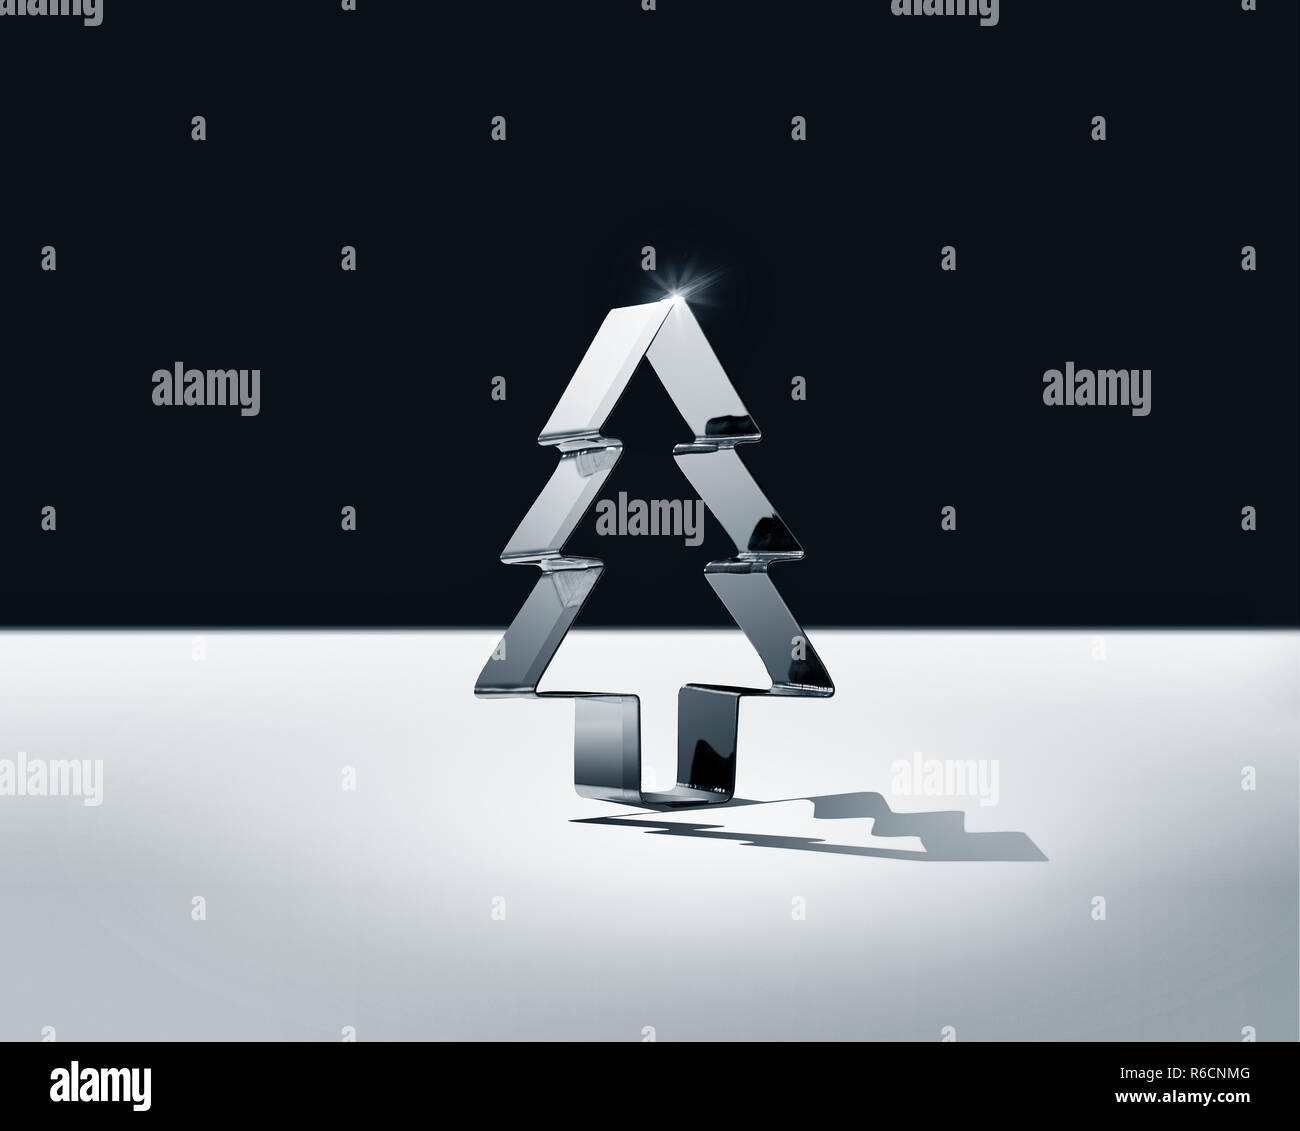 Toujours en noir et blanc de la vie de l'arbre de Noël dressé brillant forme cookie cutter Banque D'Images